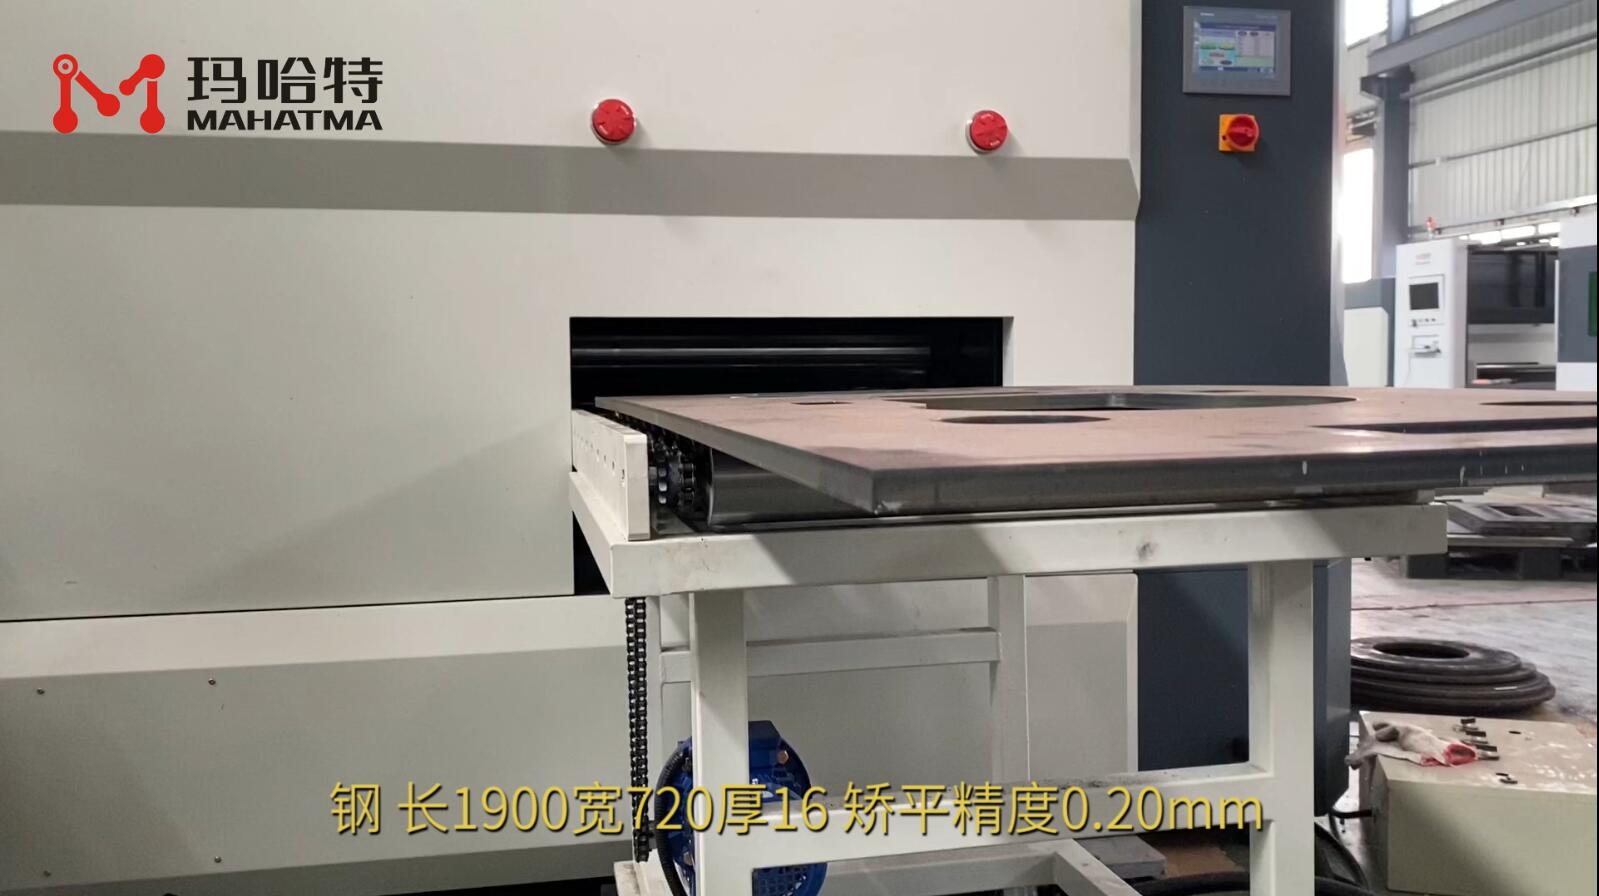  钢 MHT150-800 长方形 长1900宽720厚16 矫平精度0.20mm